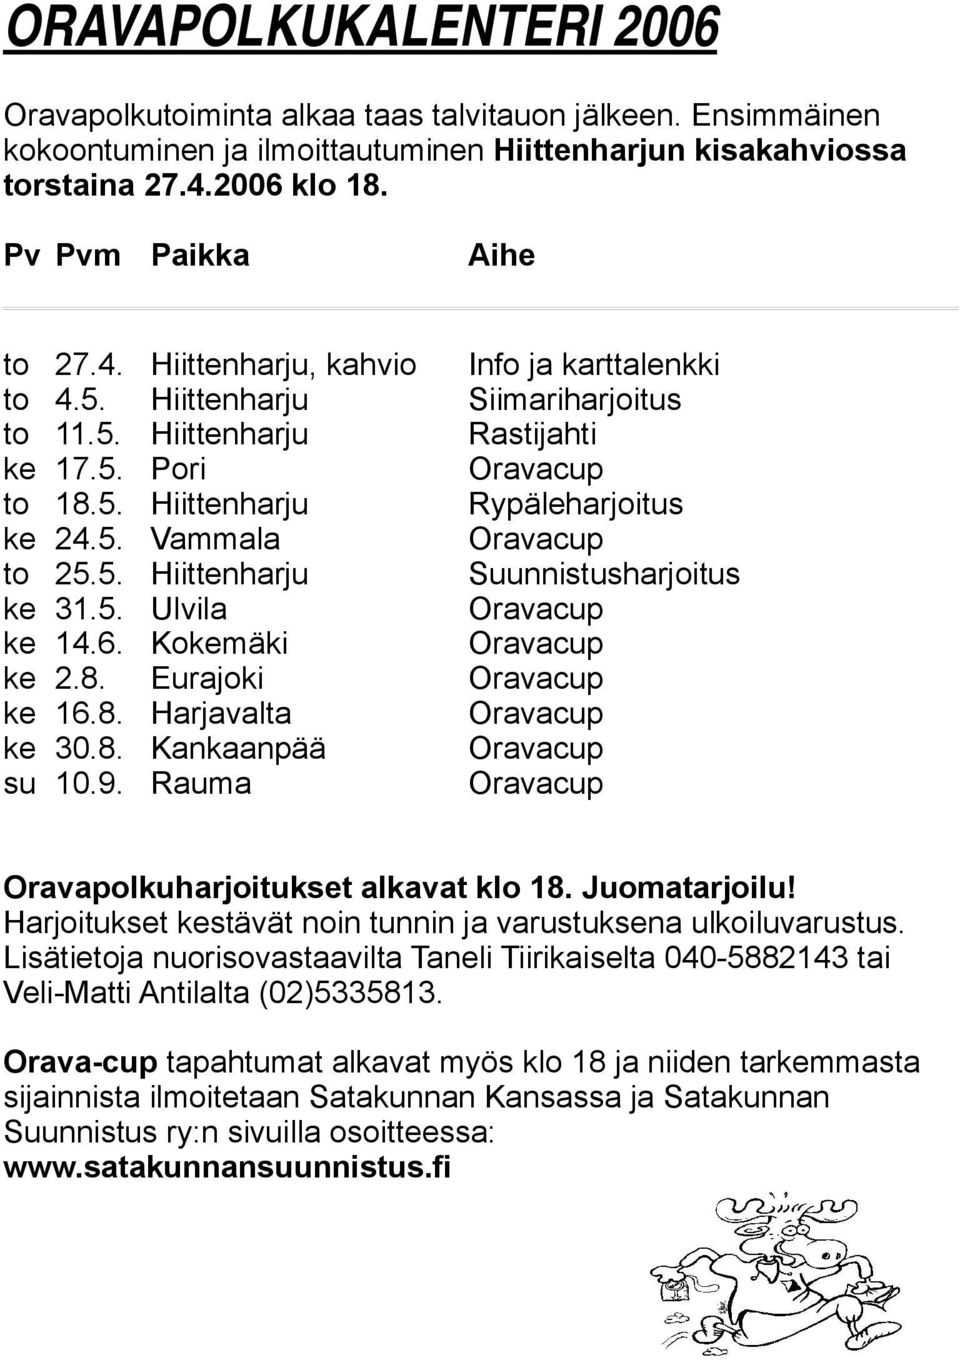 5. Vammala Oravacup to 25.5. Hiittenharju Suunnistusharjoitus ke 31.5. Ulvila Oravacup ke 14.6. Kokemäki Oravacup ke 2.8. Eurajoki Oravacup ke 16.8. Harjavalta Oravacup ke 30.8. Kankaanpää Oravacup su 10.